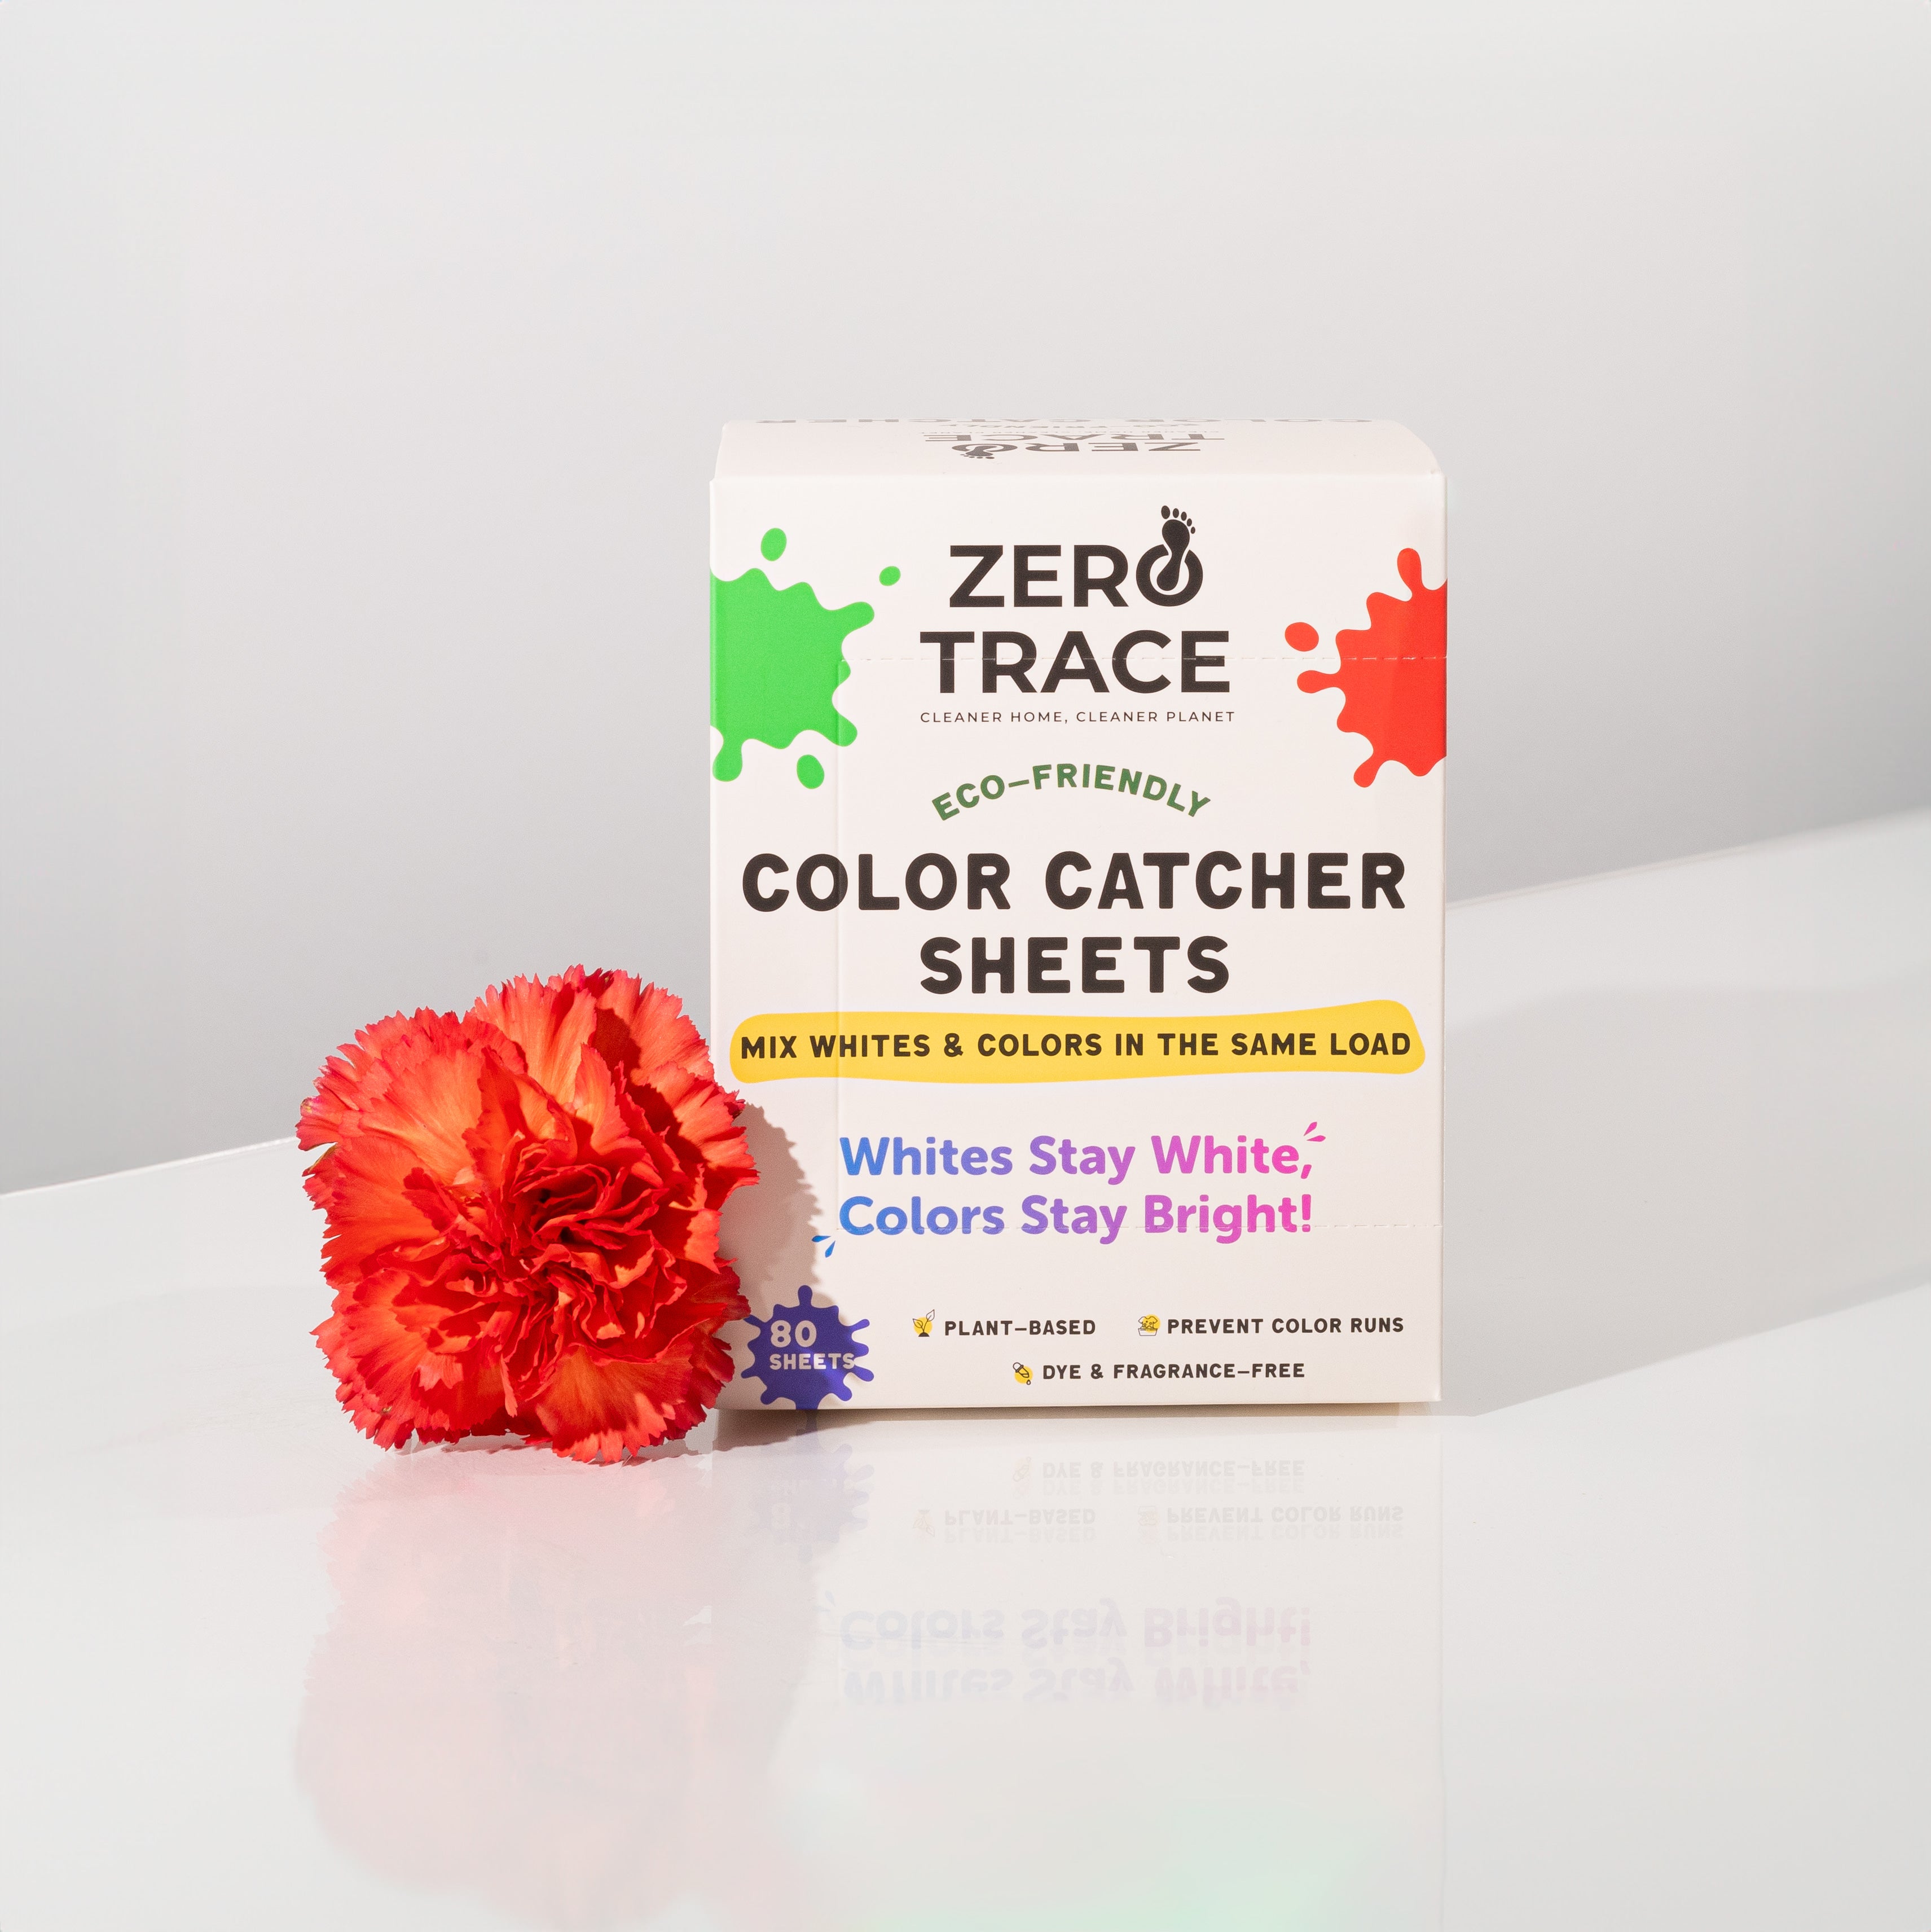 Zero Trace Color Catcher Sheets.